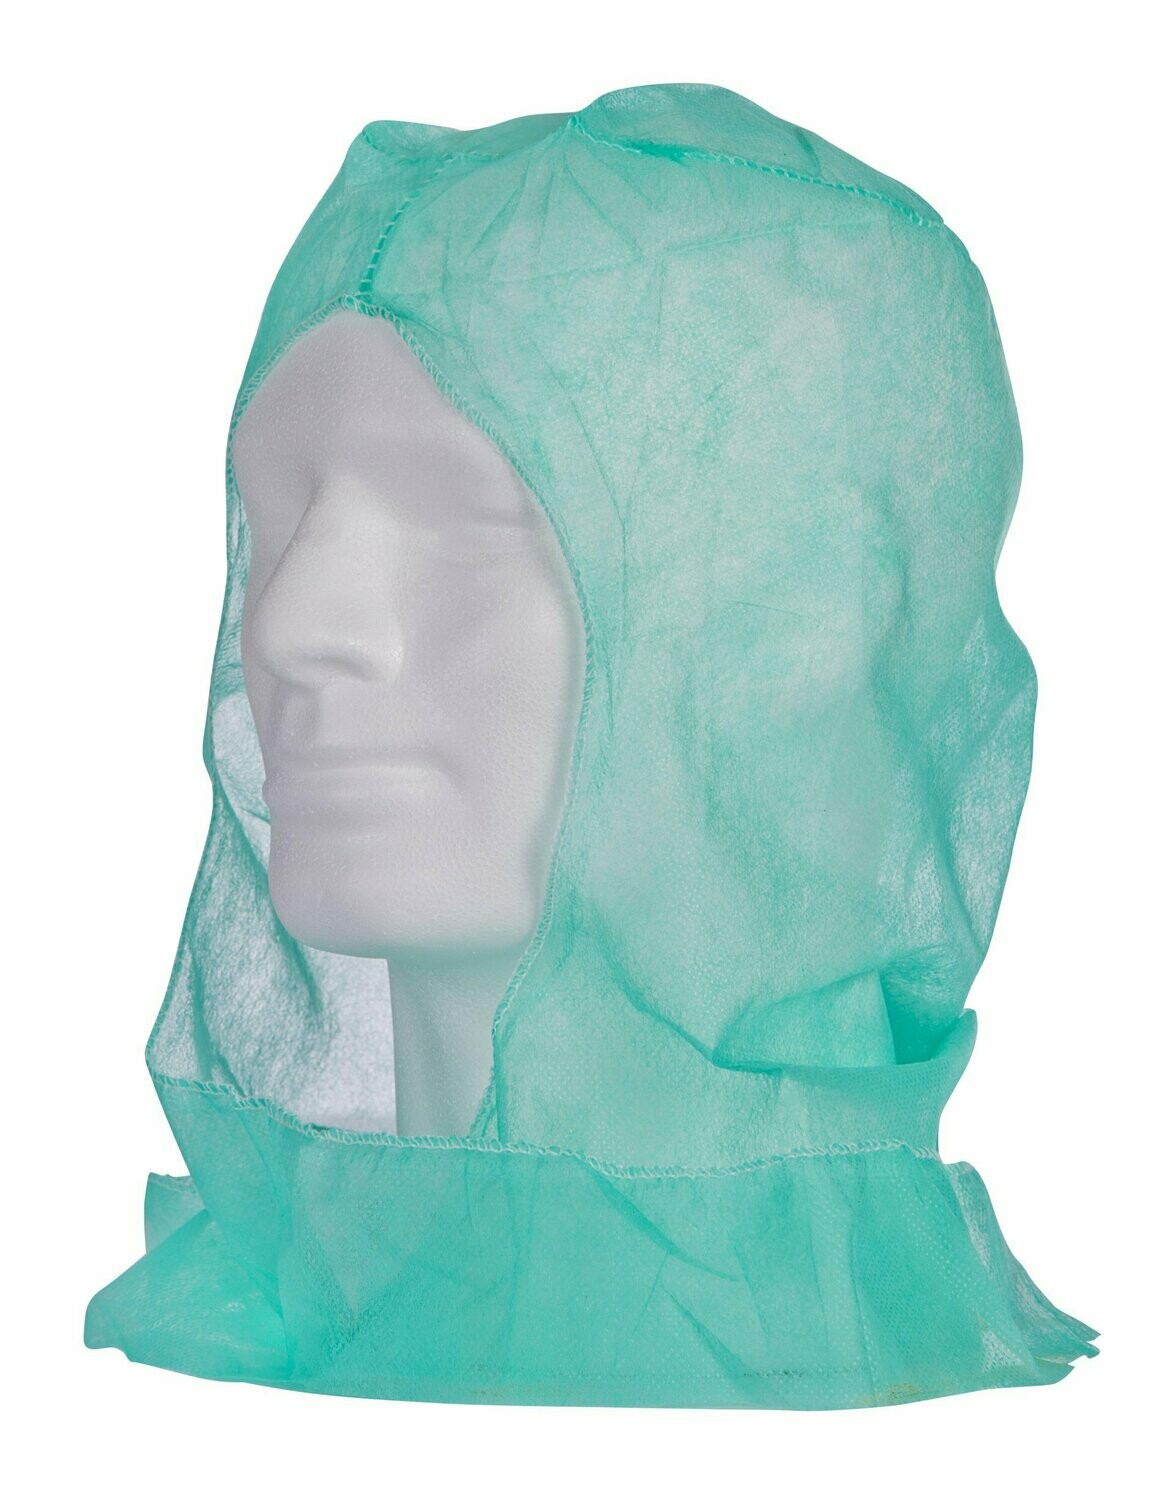 Kopfhaube OP-Haube Astronautenhauben, blau 1x100